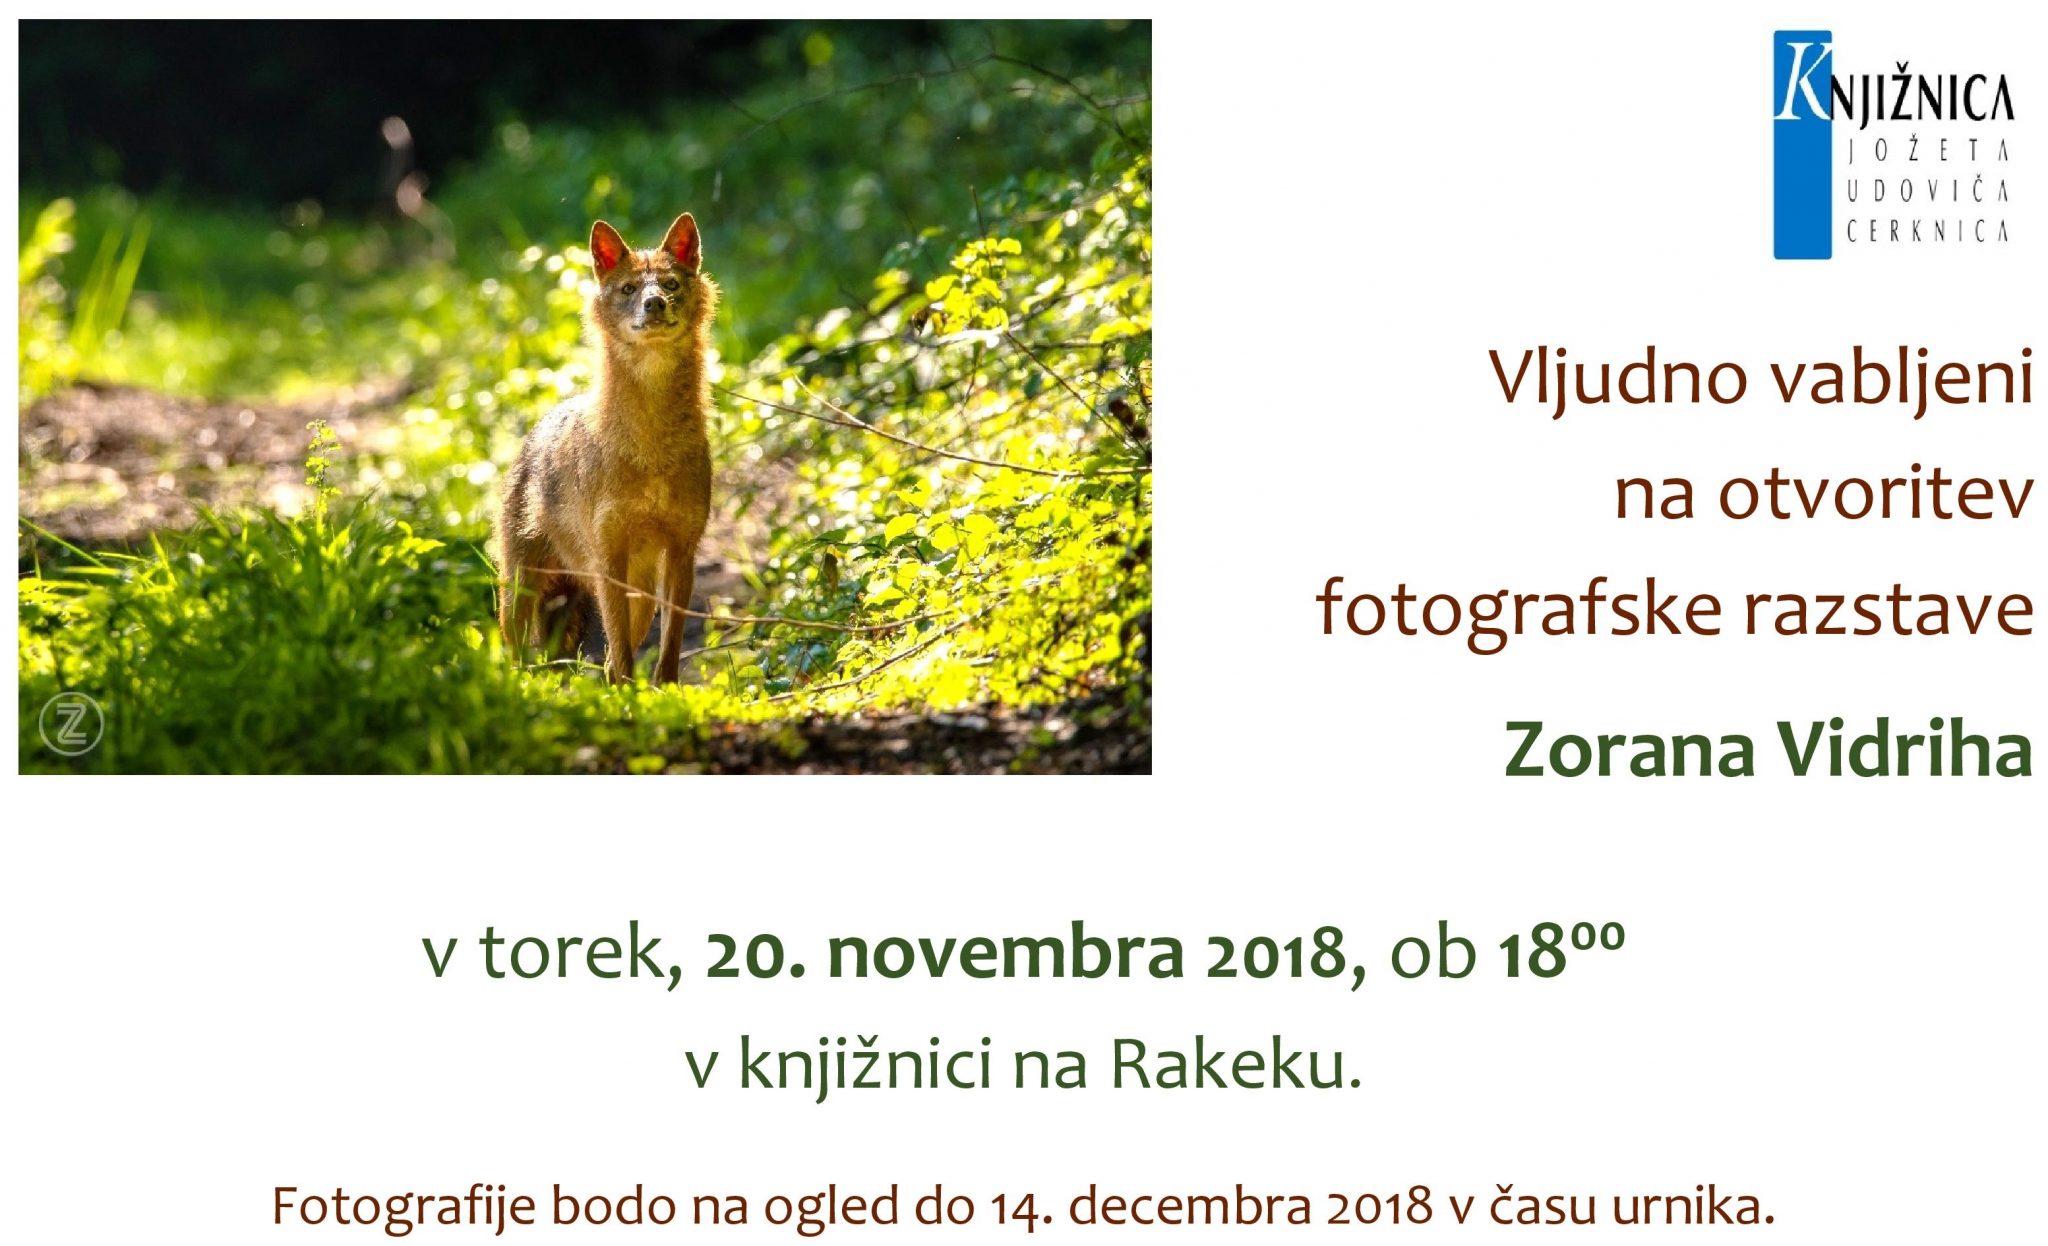 cover 1 - Zoran Vidrih - otvoritev fotografske razstave